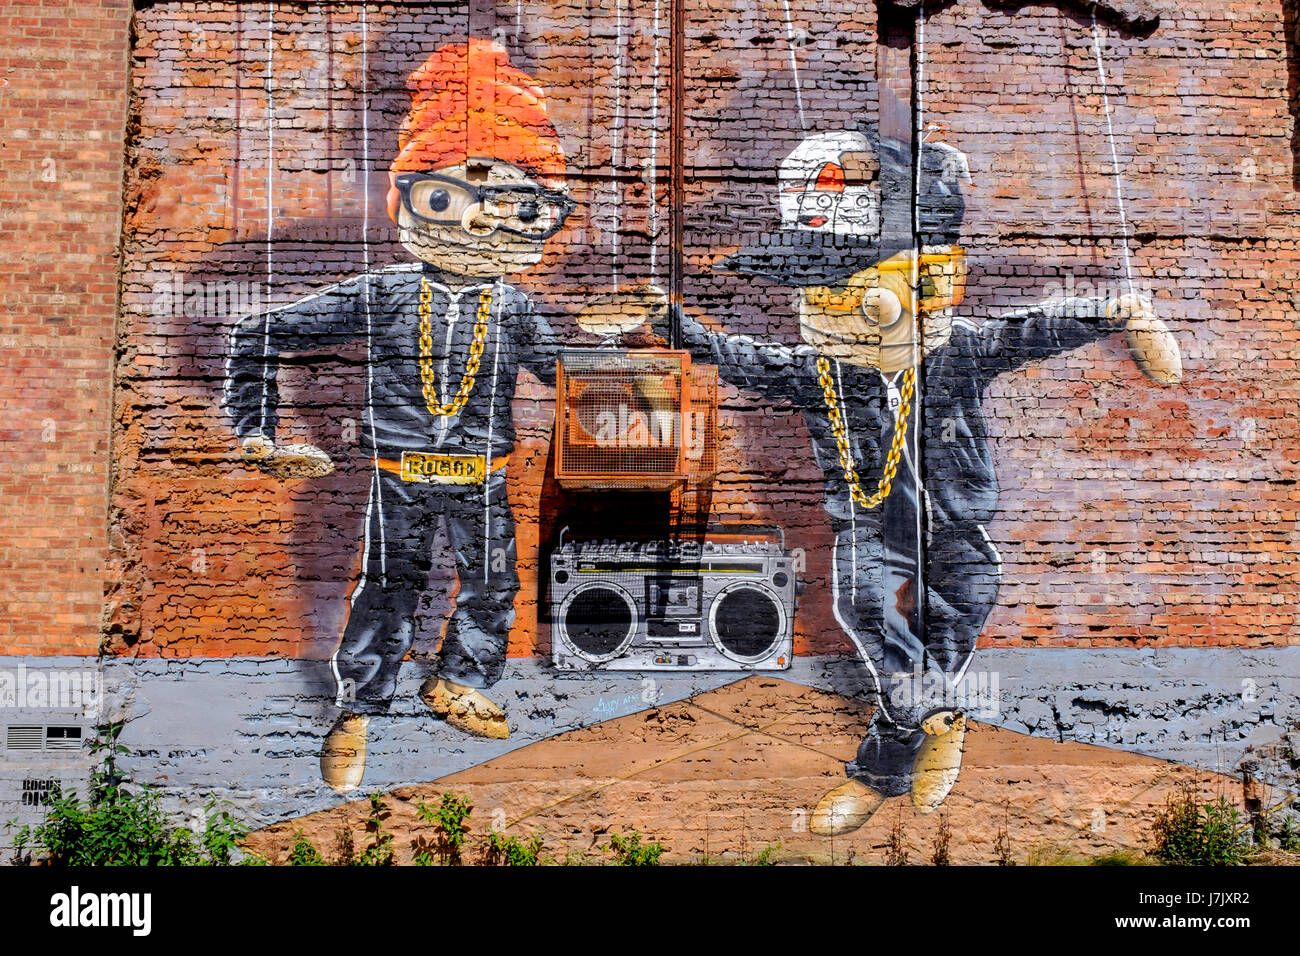 L'art de mur sur un mur pignon dans le centre-ville de Glasgow, montrant deux marionnettes danse au son de la musique, Glasgow, Écosse, Royaume-Uni Banque D'Images